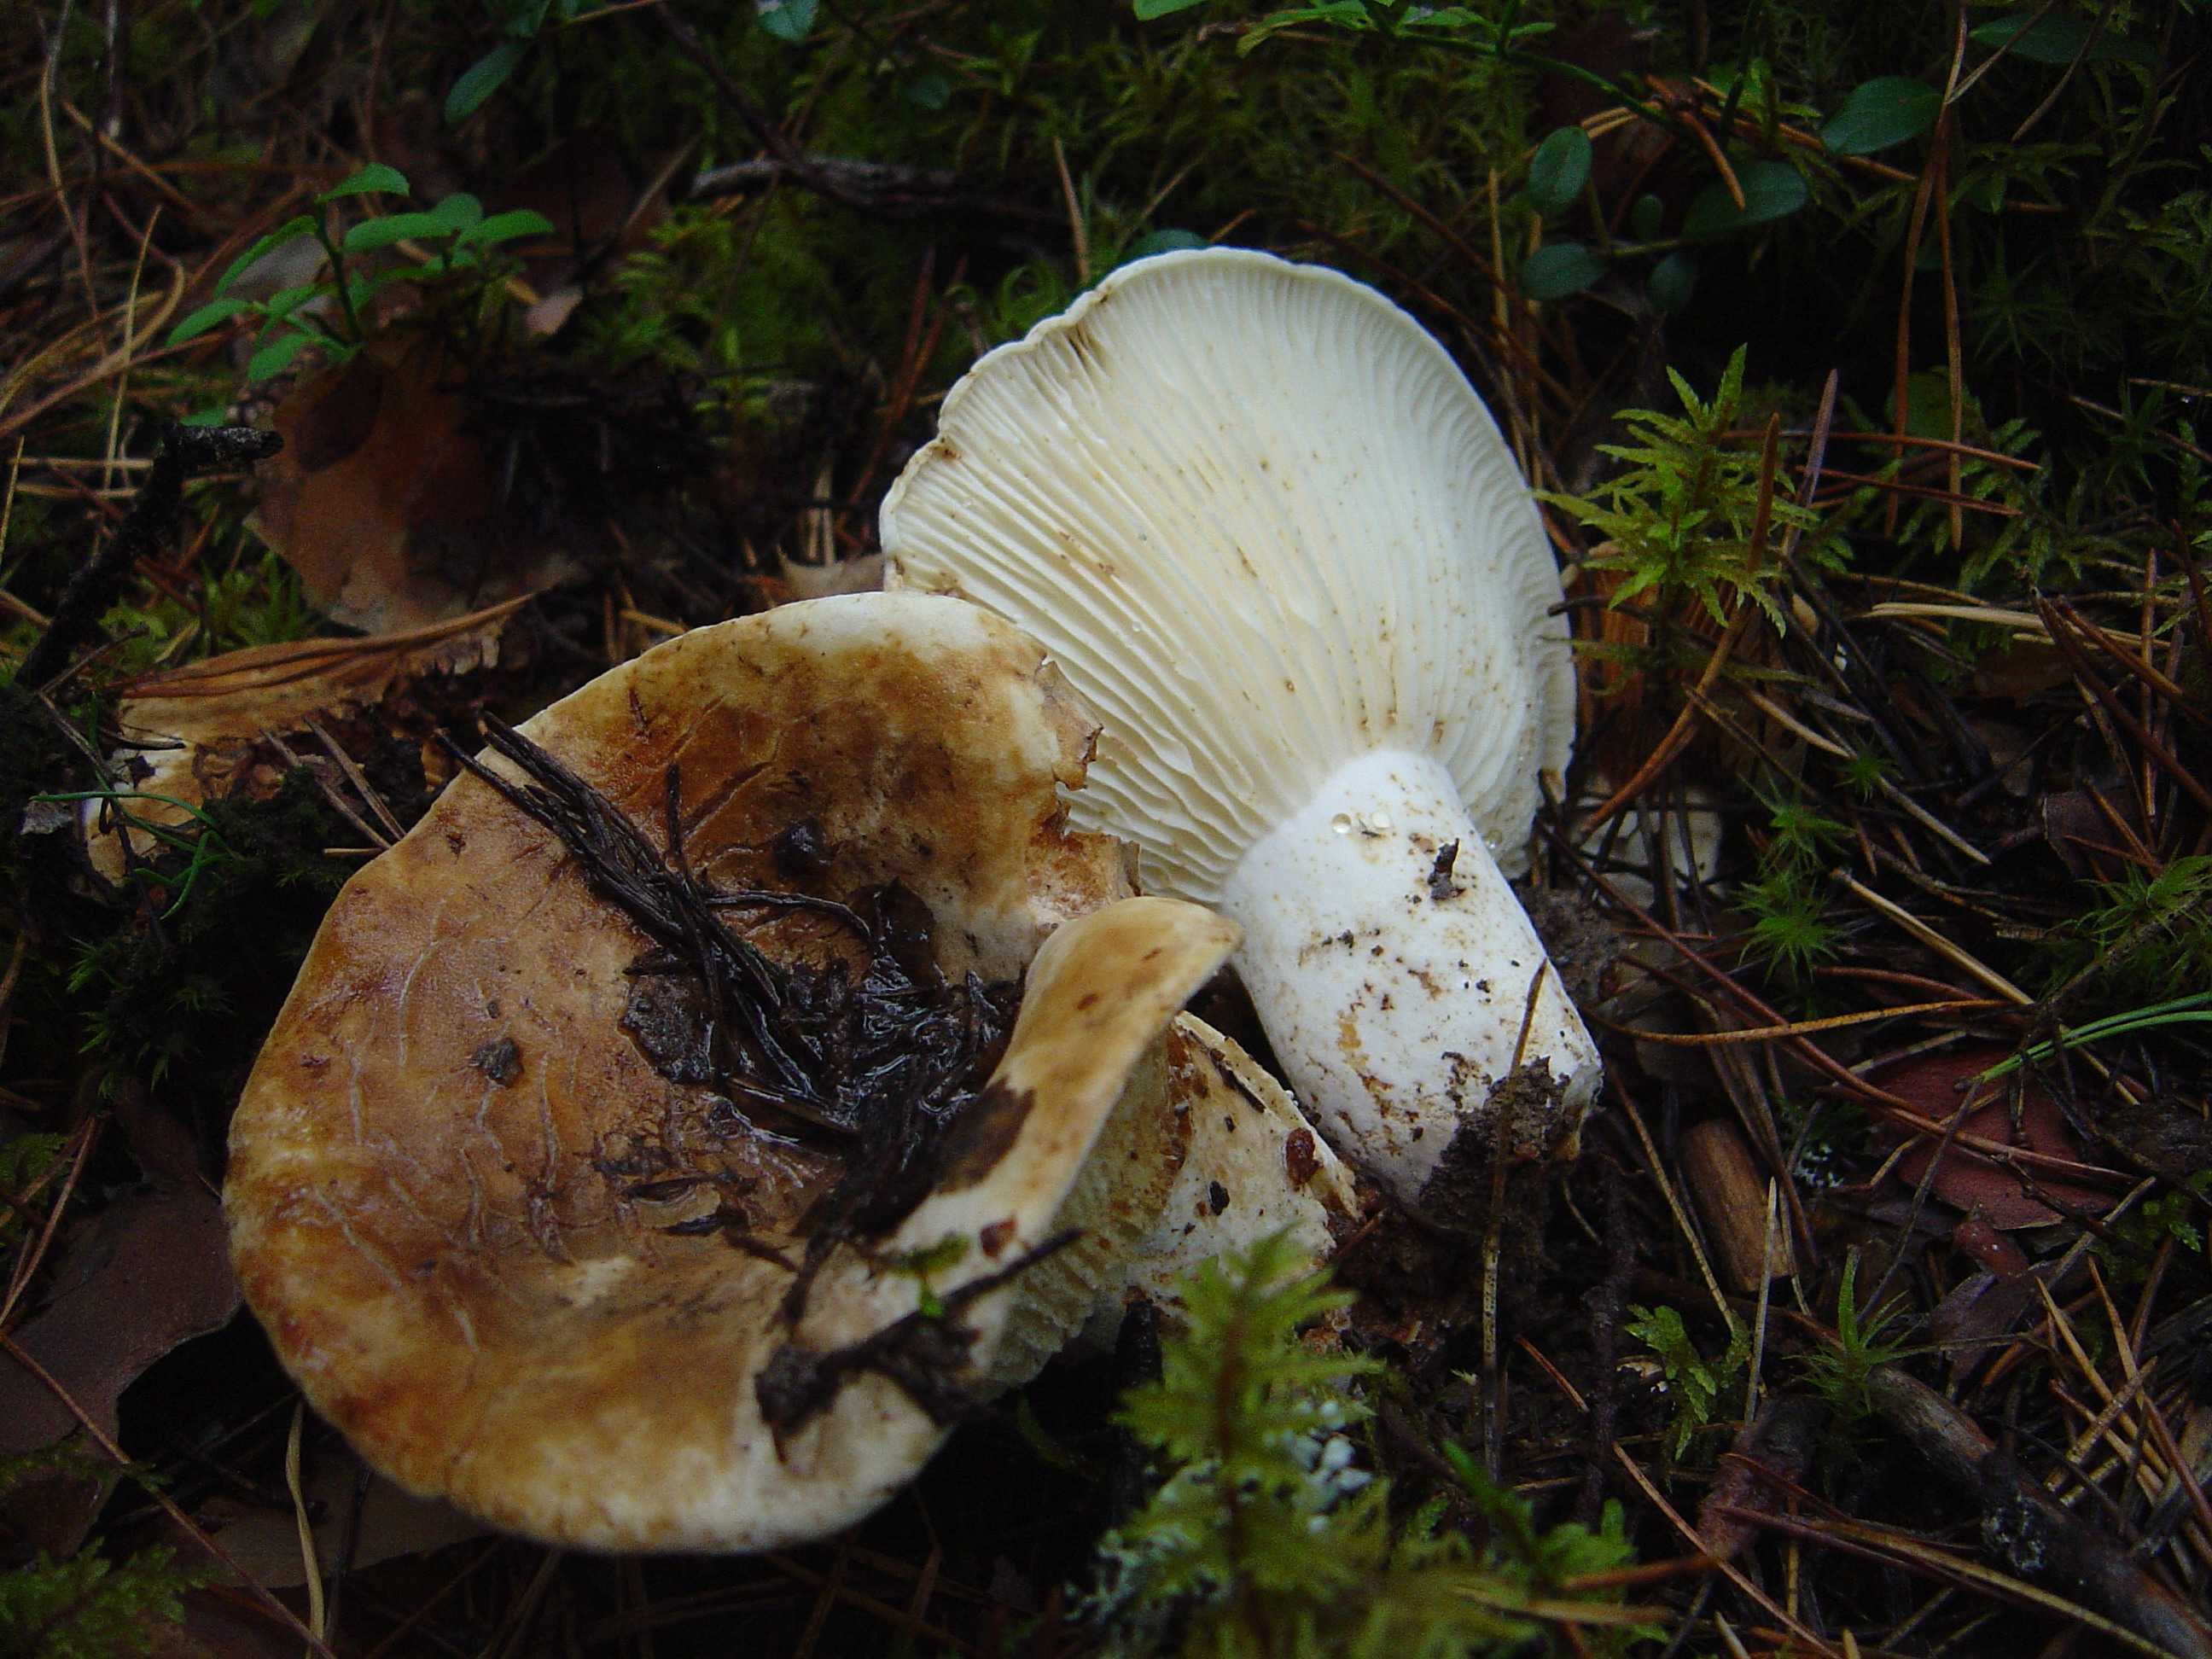 Как отличить съедобные грибы от несьедобных